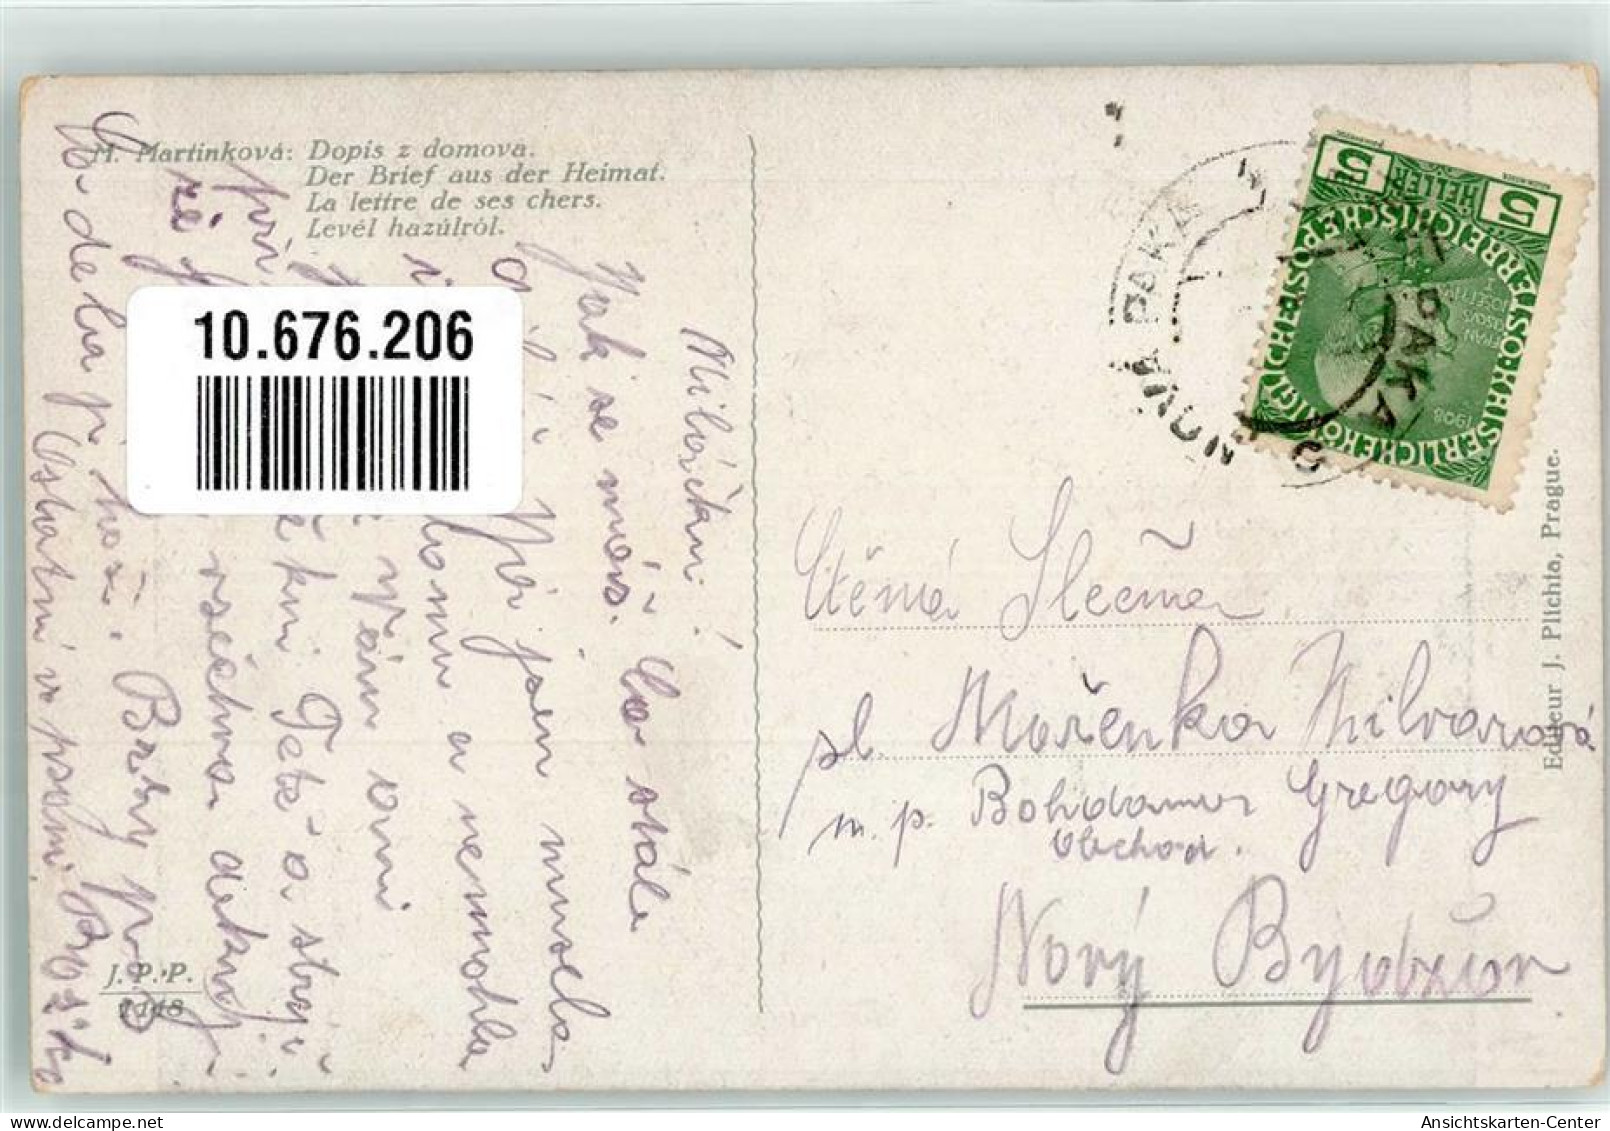 10676206 - Krankenschwester Besucht Soldaten Brief Aus Der Heimat  Sign. Martikova - Red Cross